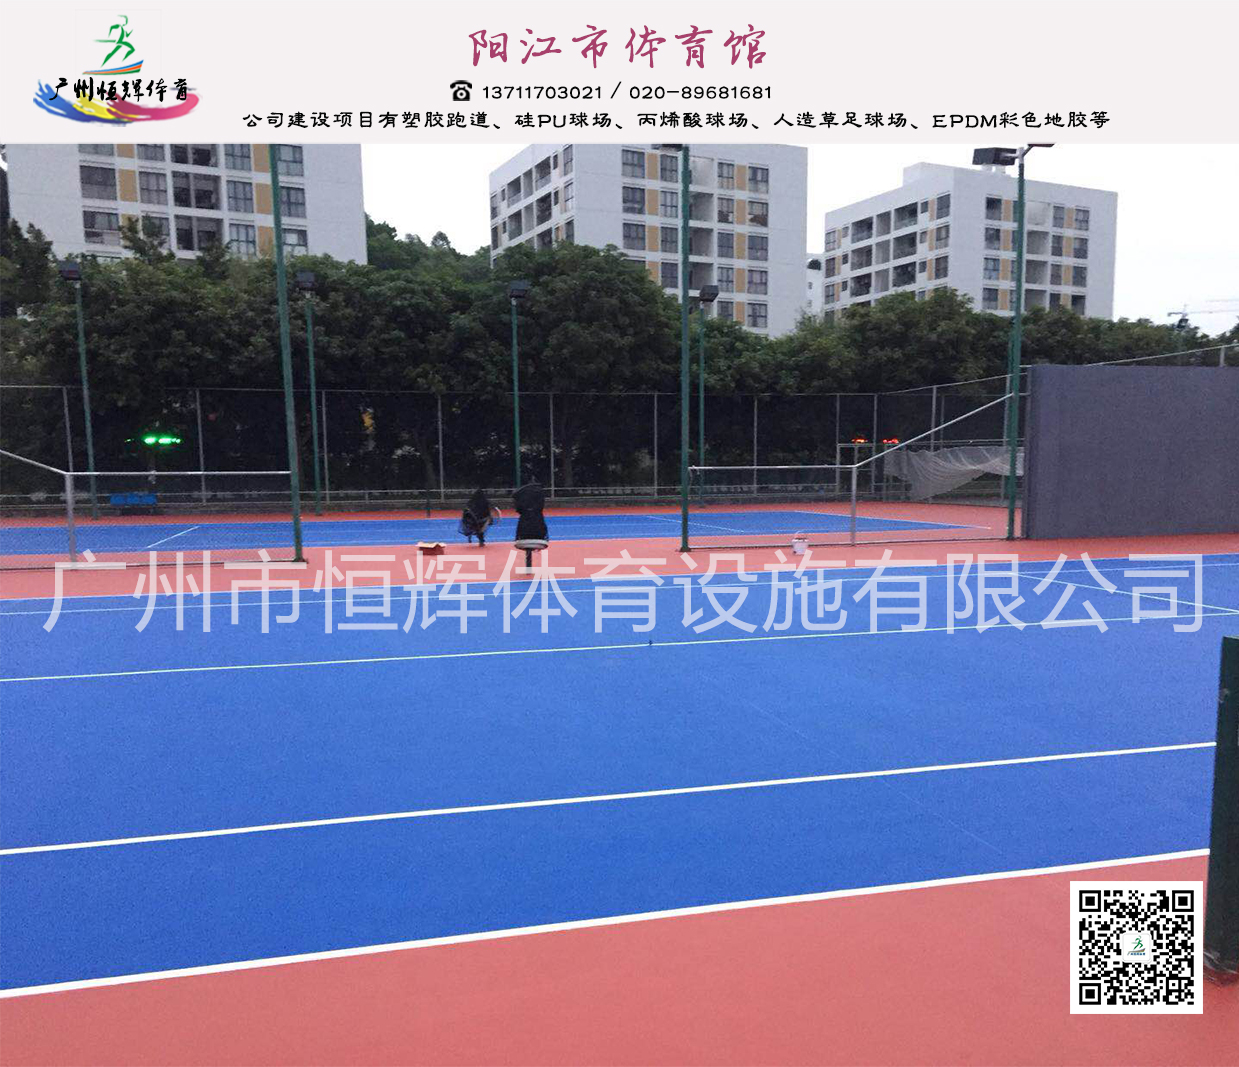 丙烯酸球场材料阳江市体育馆项目